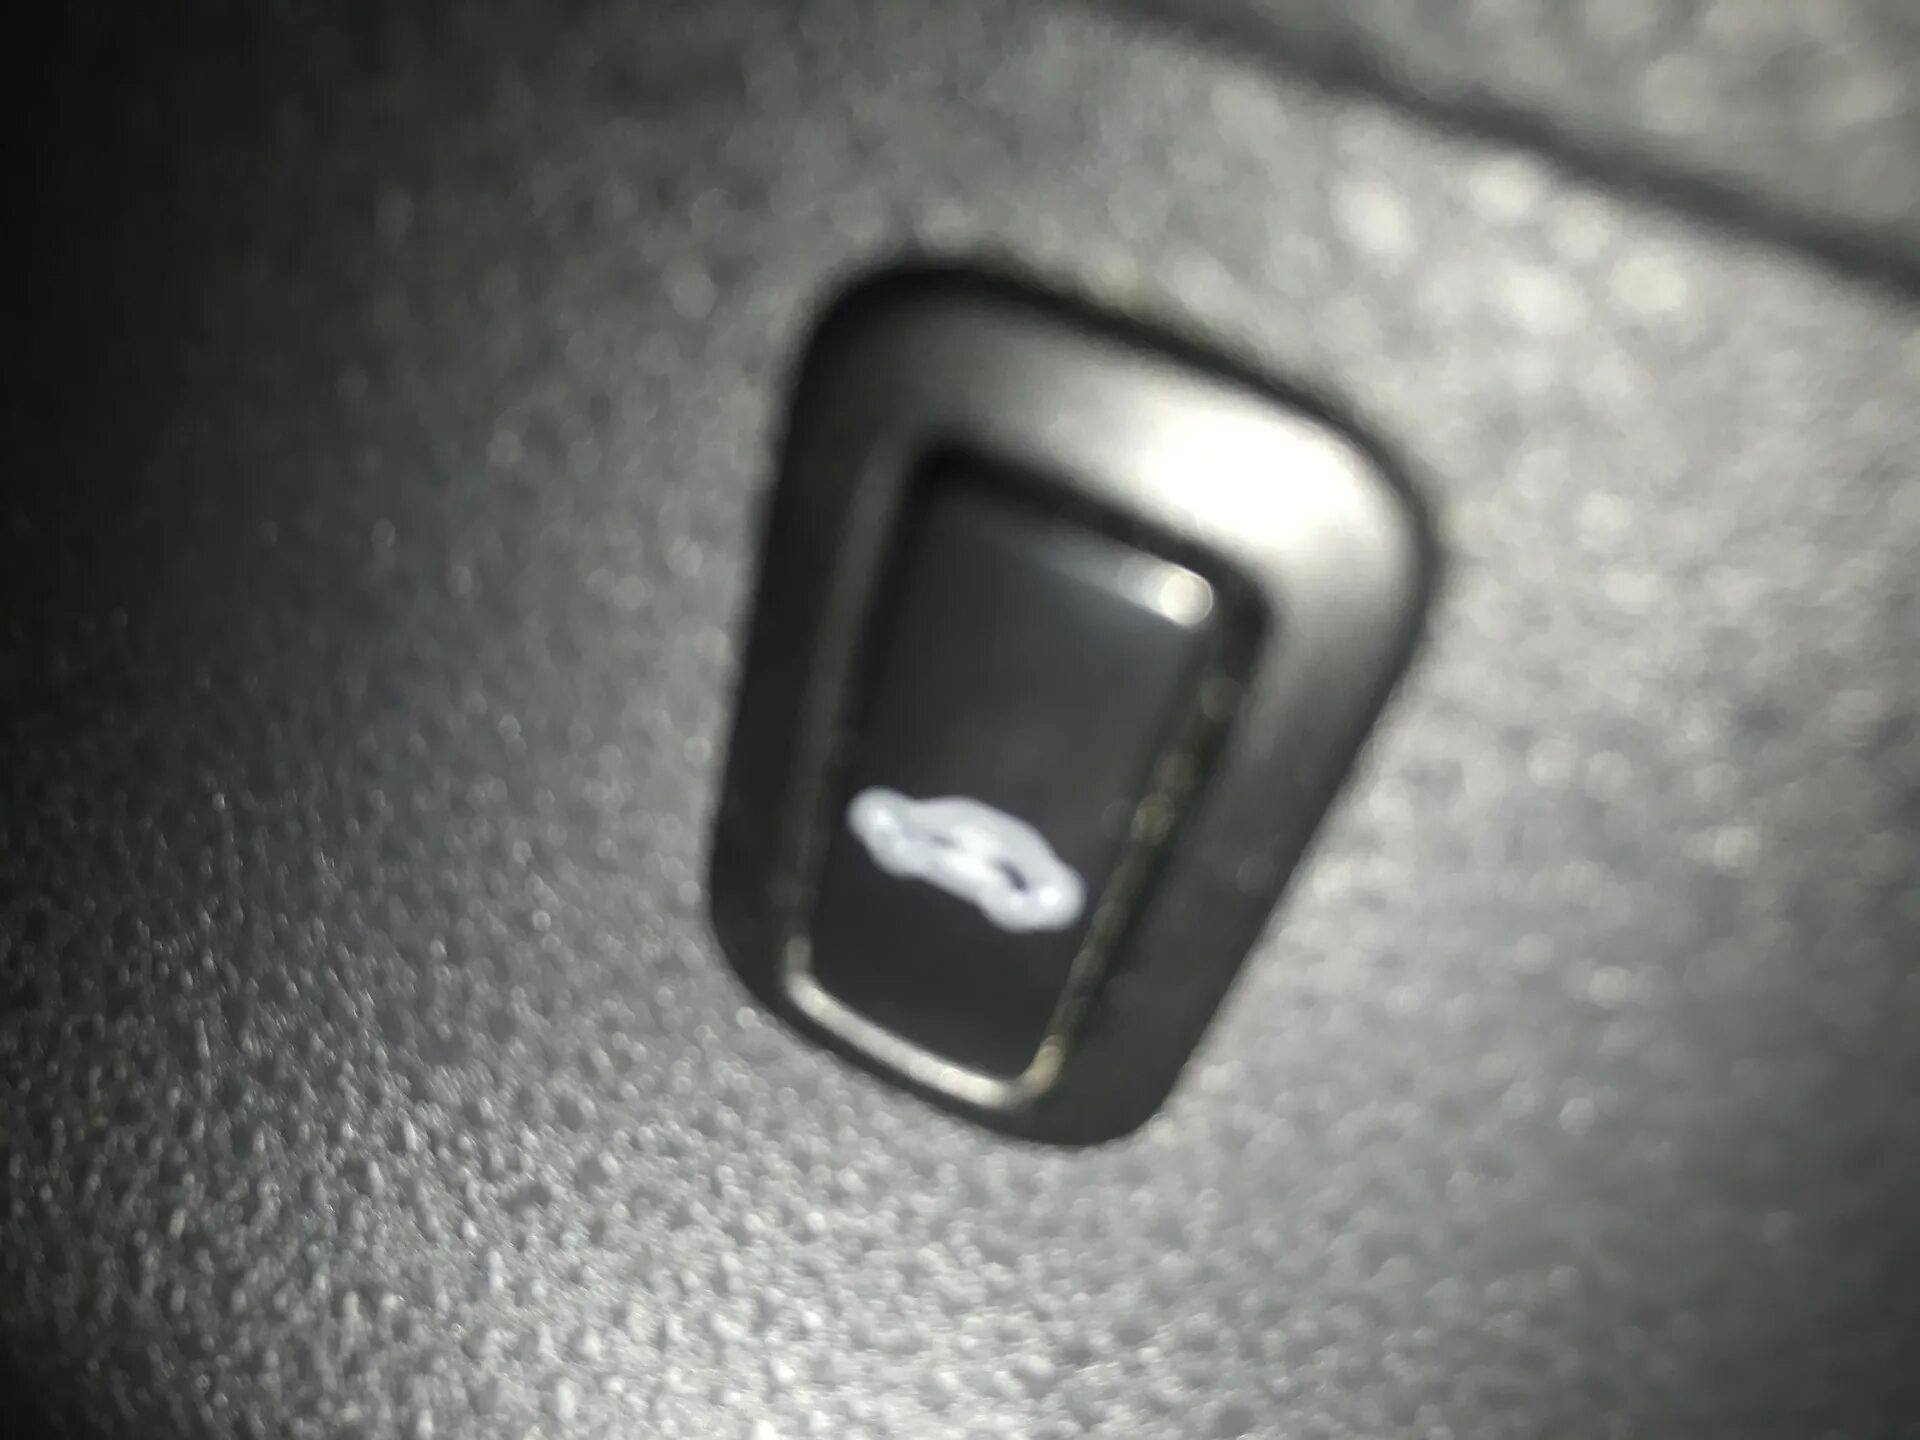 Кнопки vw polo. Кнопка на водительской стойке Пассат б6. Заглушка кнопки VW Polo sedan. Кнопки на двери на Фольксваген поло 2006 года. Кнопка на водительской стойке Фольксваген поло.